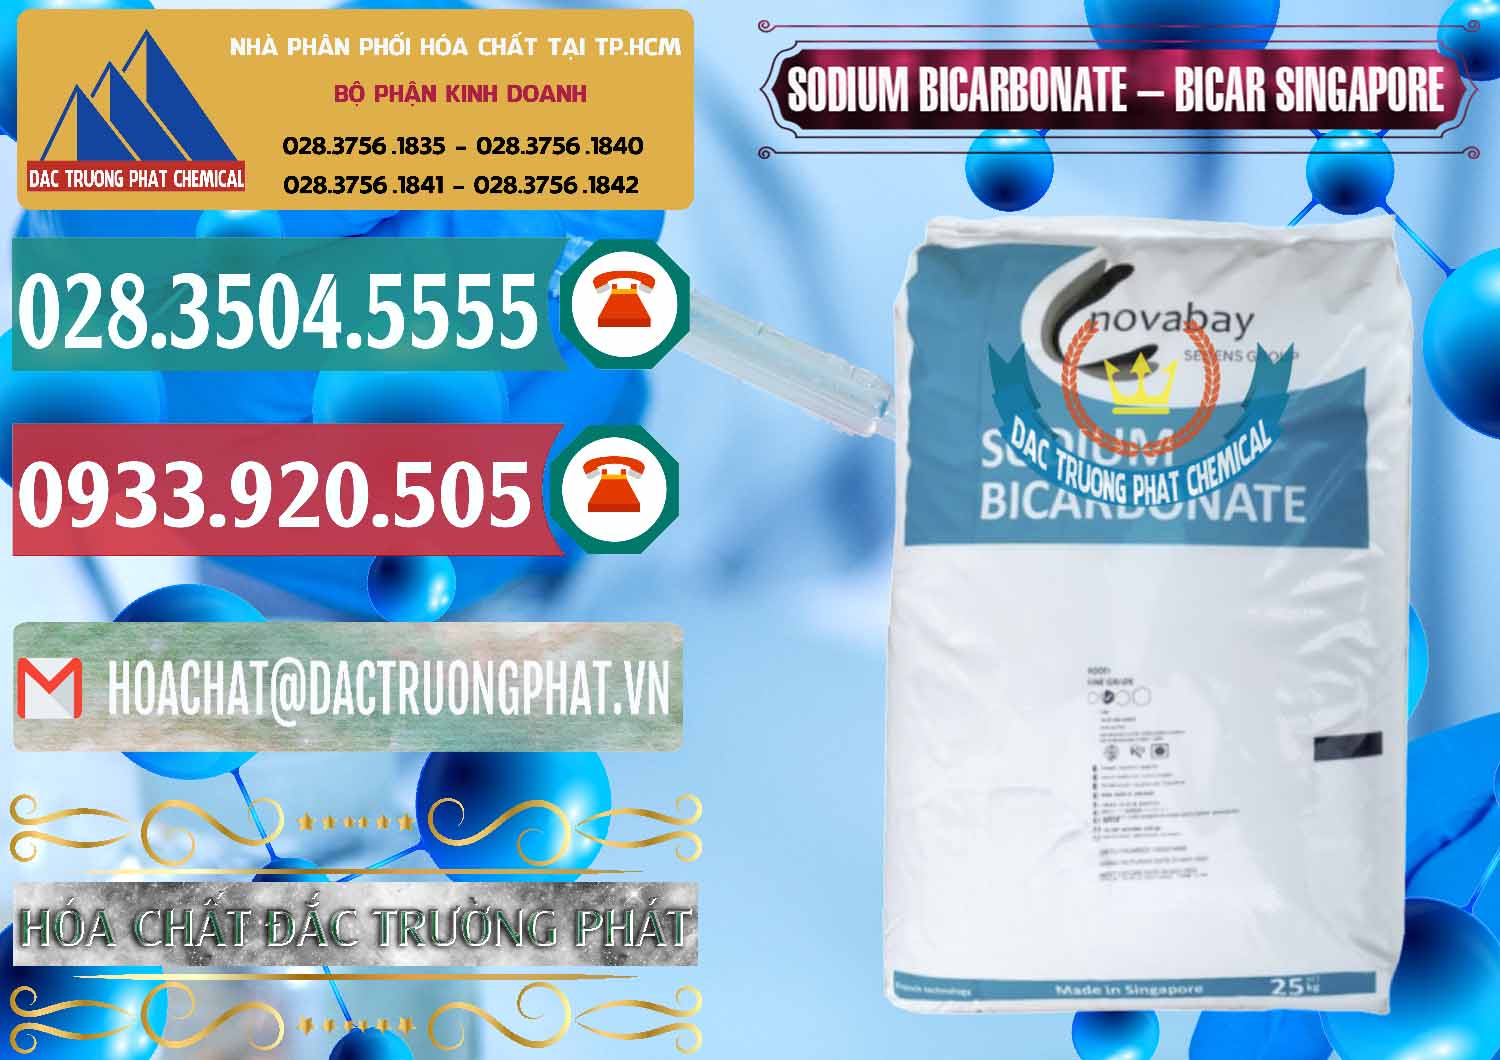 Cty bán - cung cấp Sodium Bicarbonate – Bicar NaHCO3 Singapore - 0411 - Công ty cung cấp ( phân phối ) hóa chất tại TP.HCM - muabanhoachat.vn